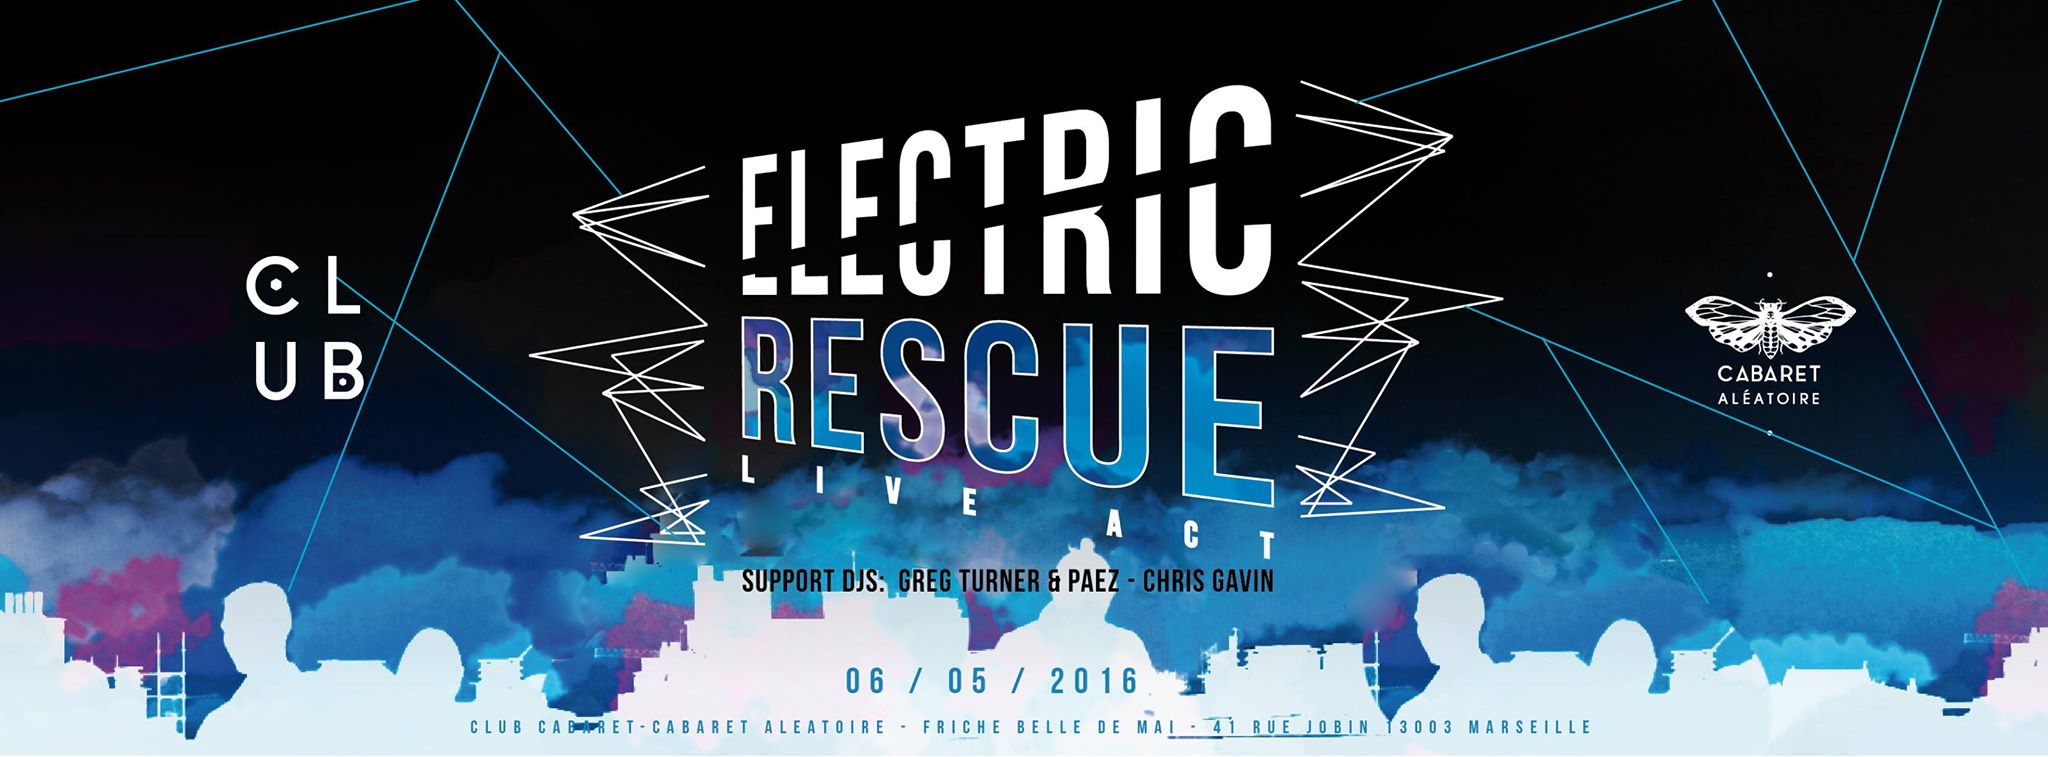 Cabaret Aléatoire Blog Electric Rescue